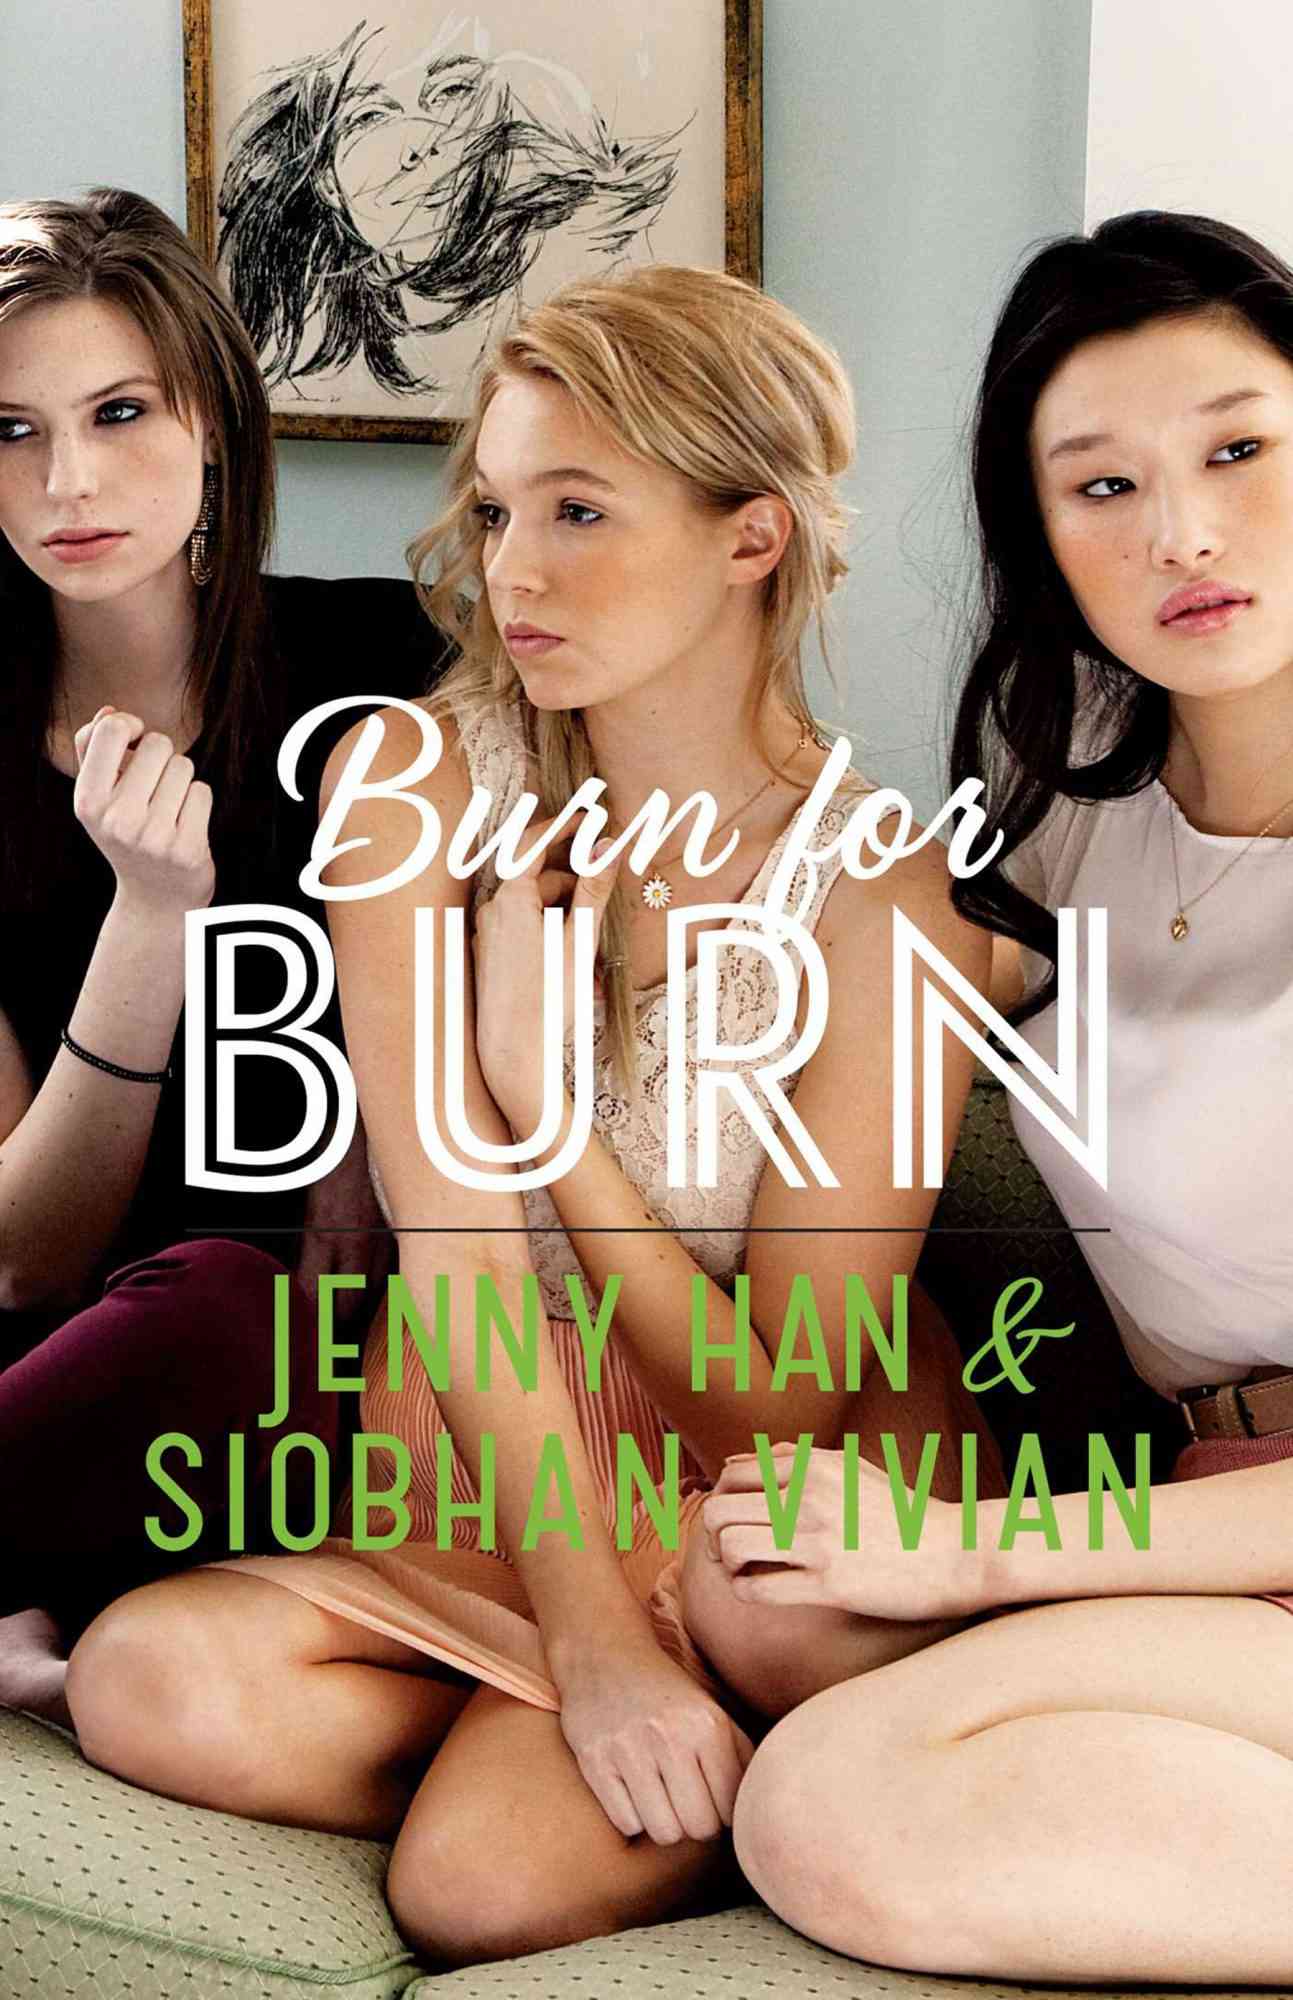 Jenny Han and Siobhan Vivian, Burn for Burn